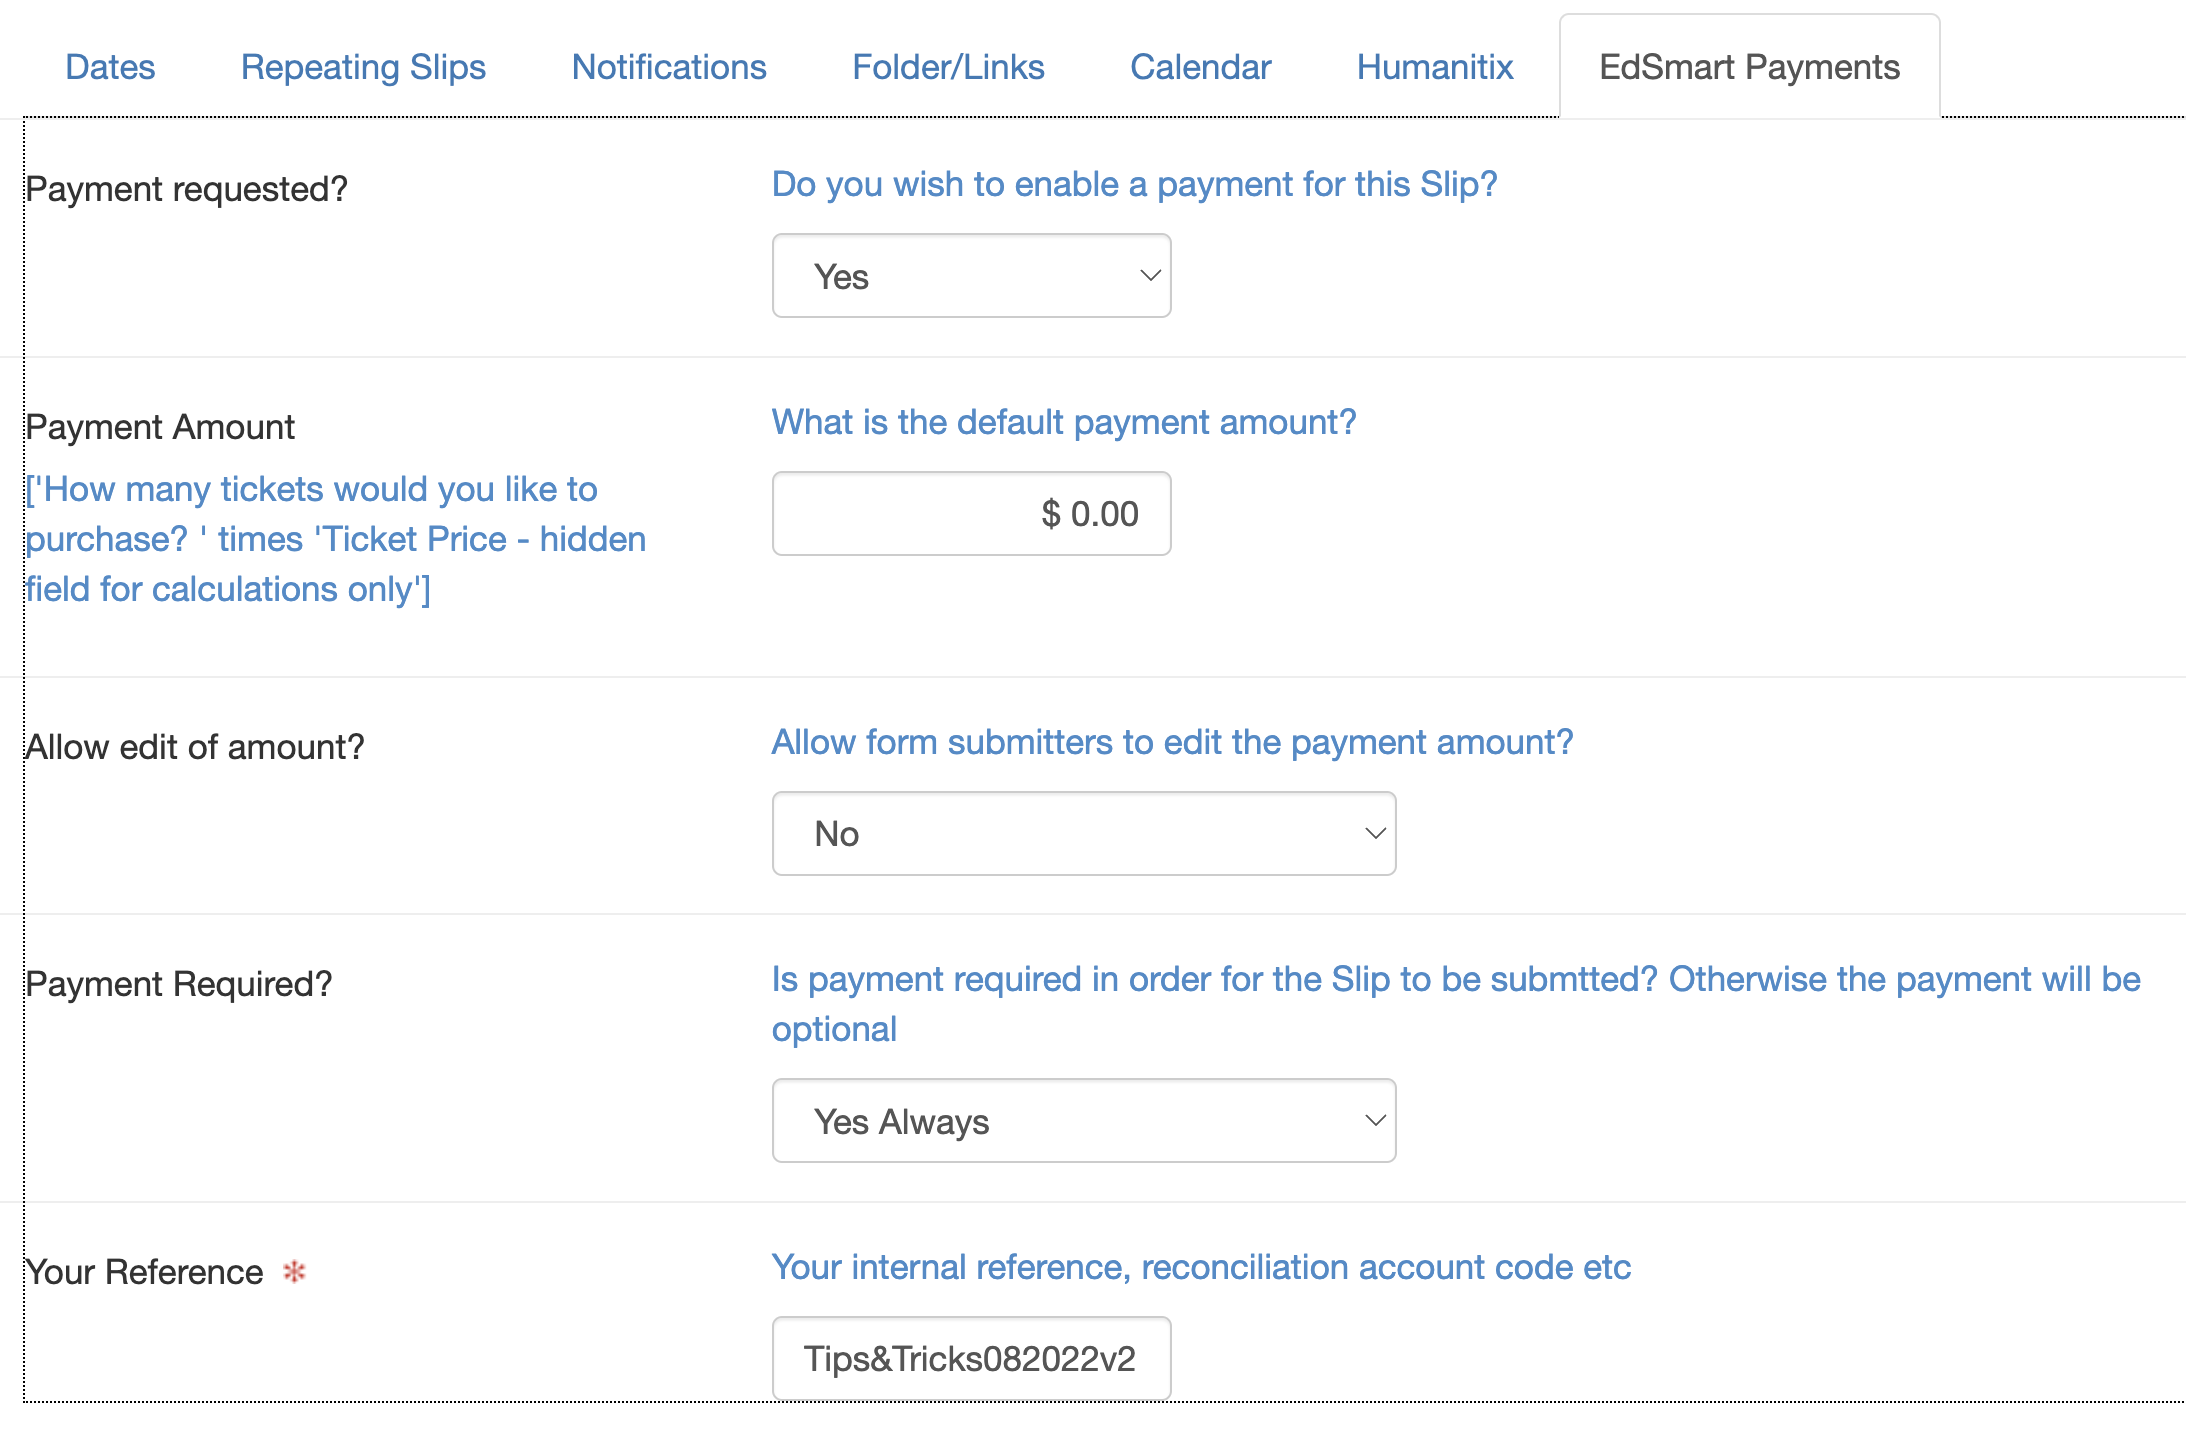 Tips&TricksAugust EdSmart Payments tab v2